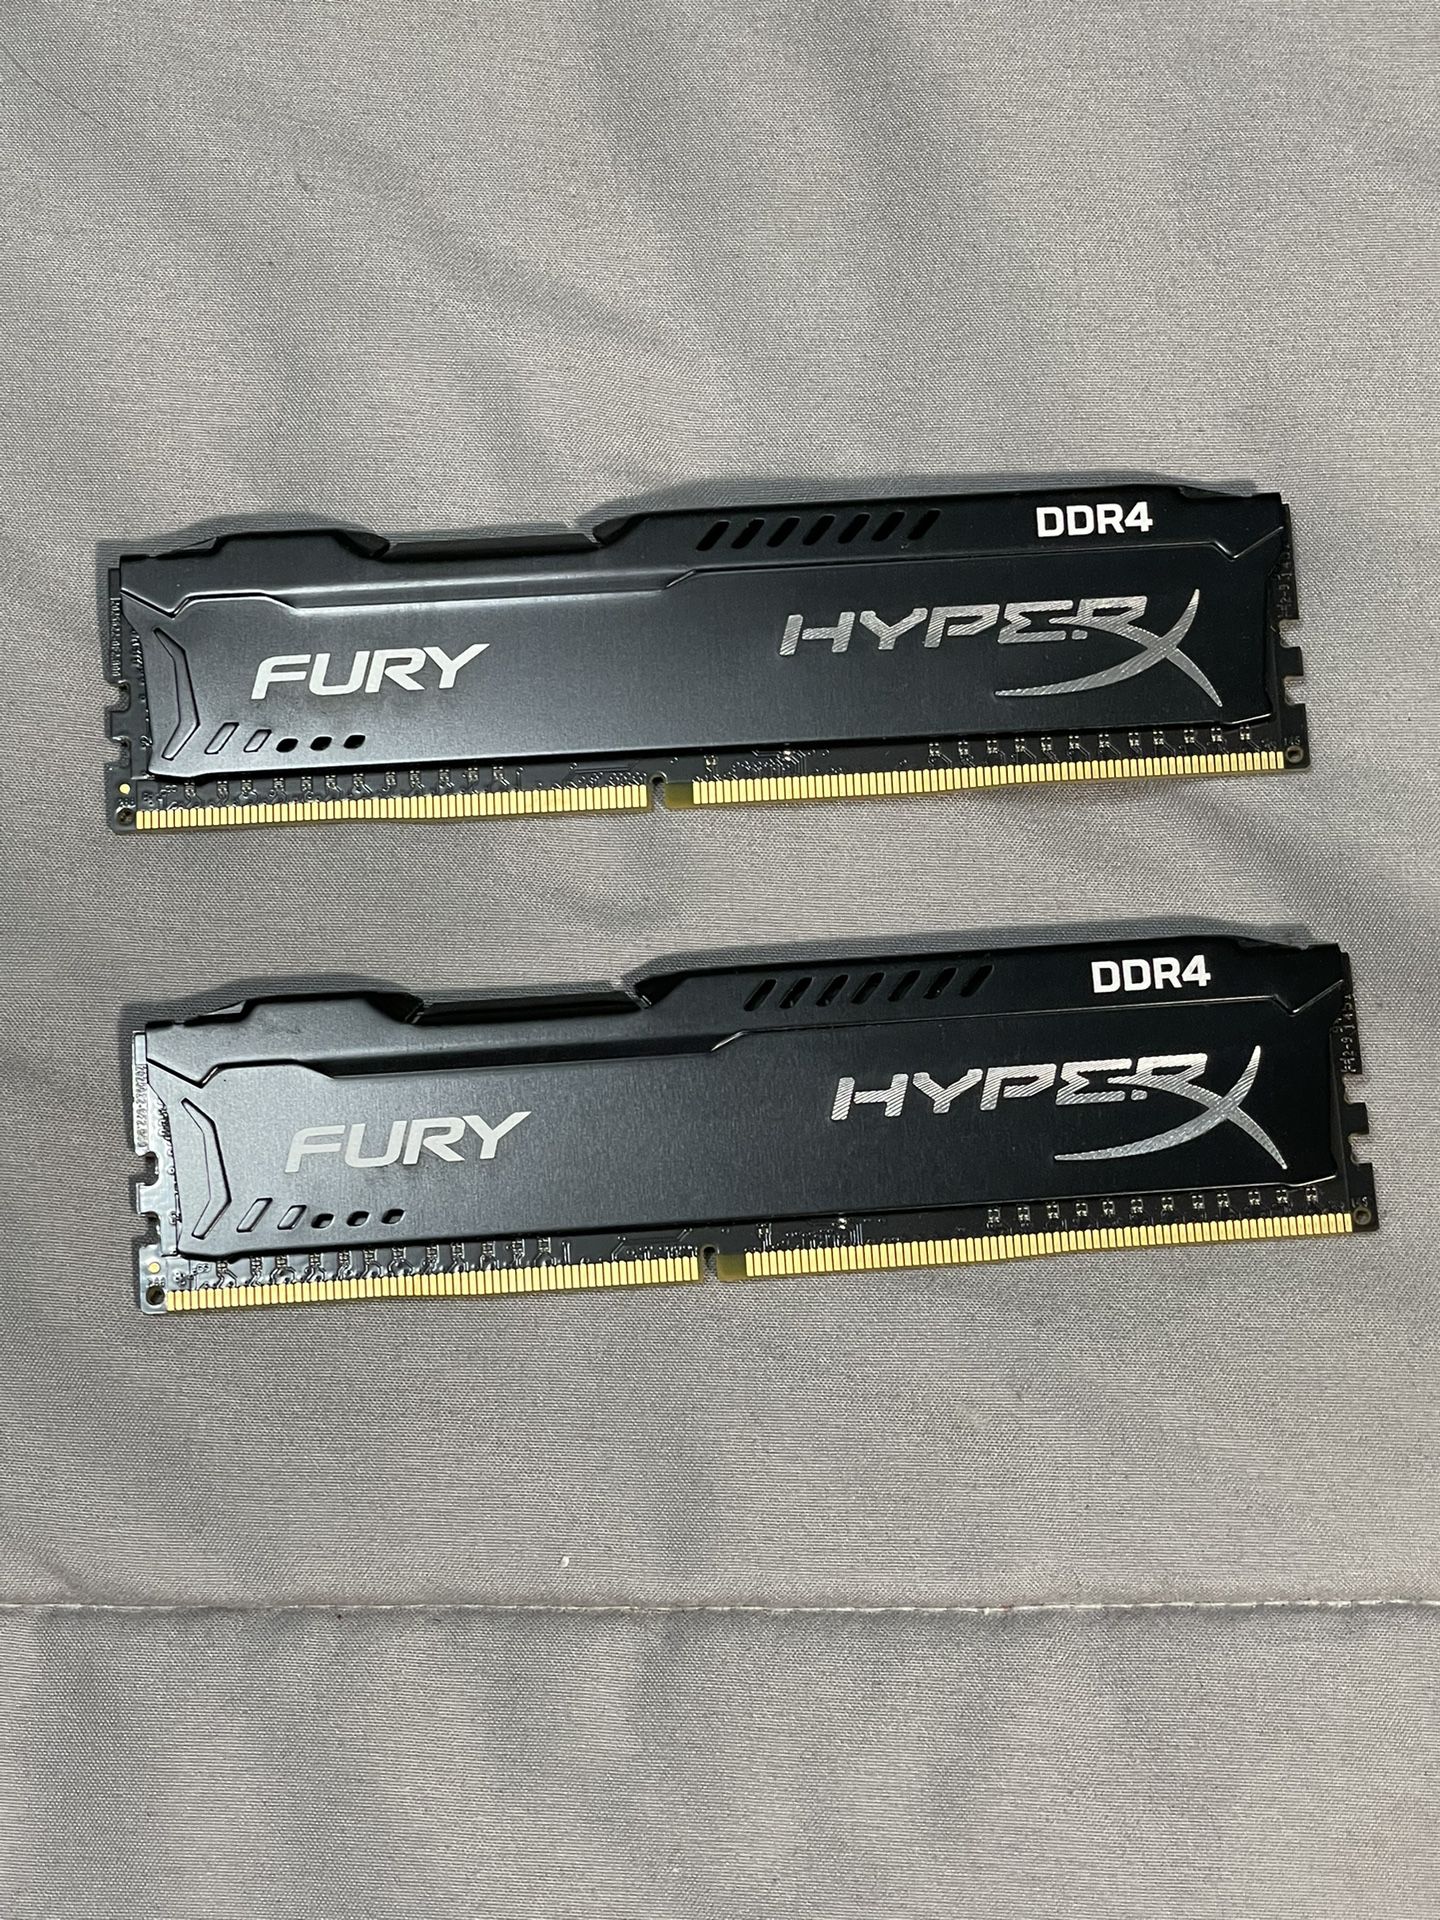 Fury HyperX DDR4 8GB RAM